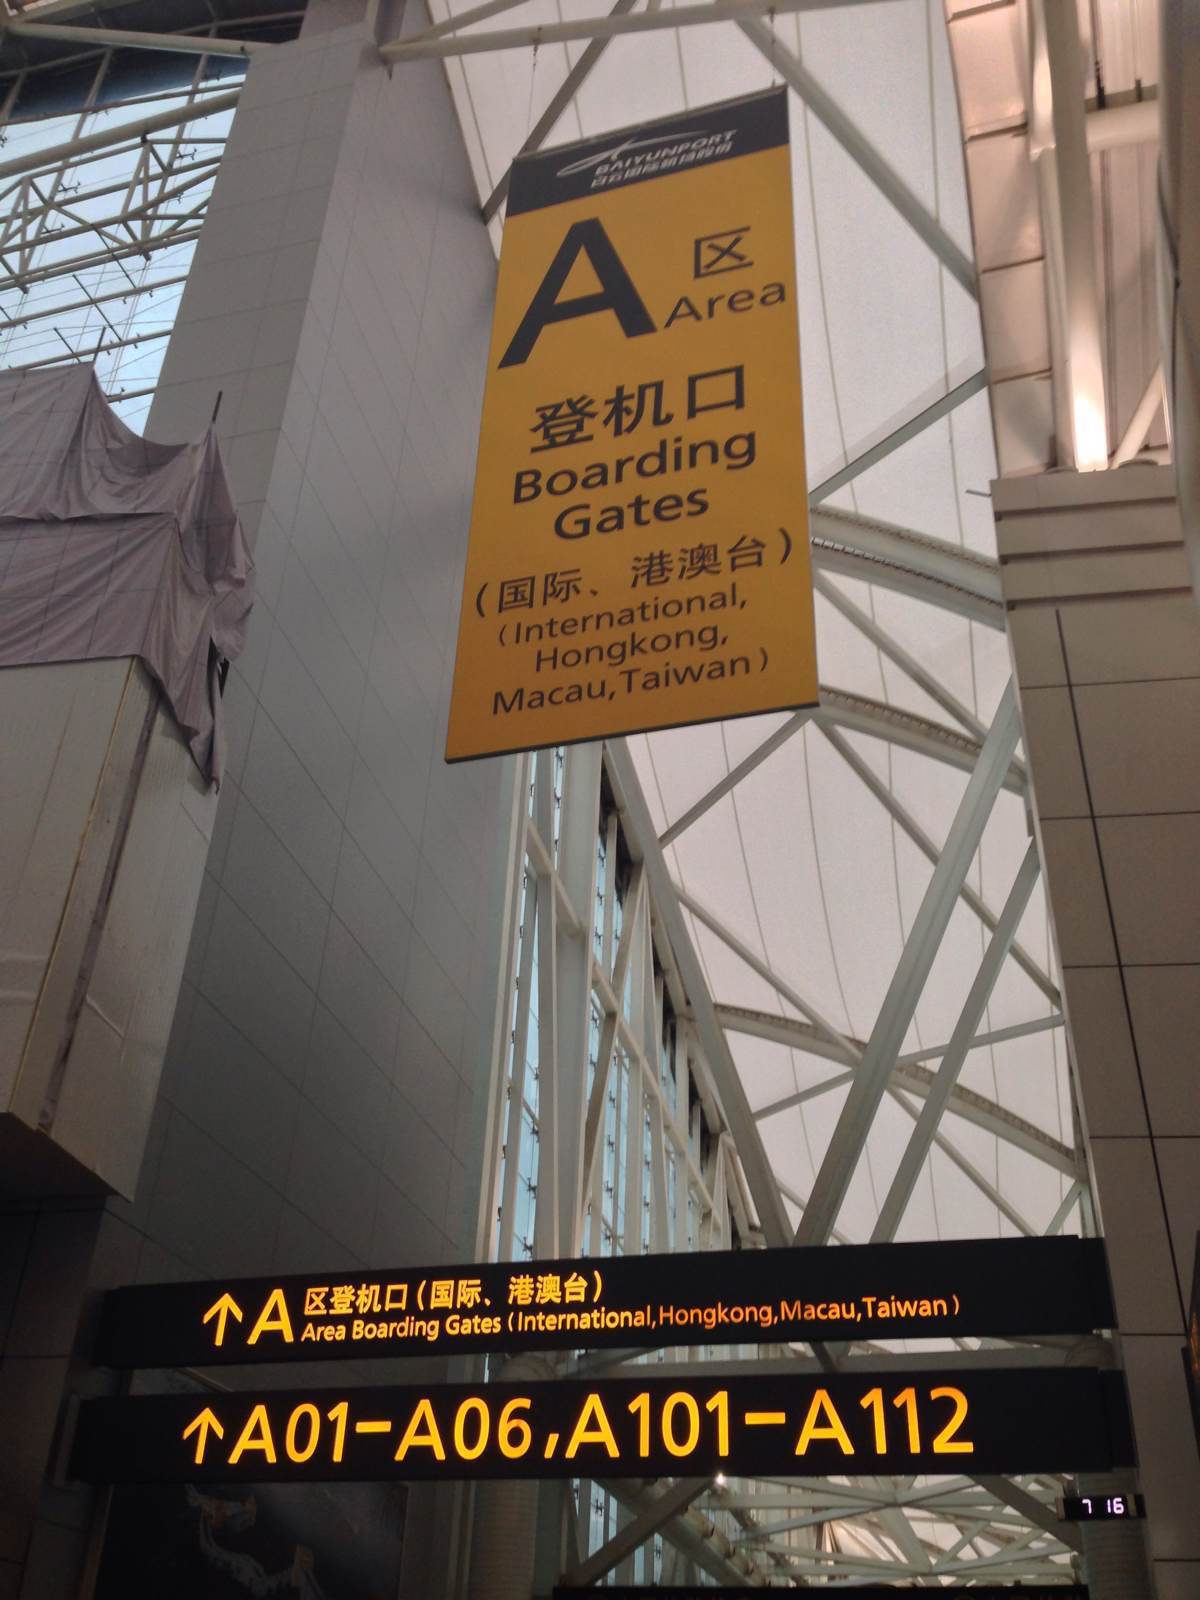 广州机场出站口图片图片